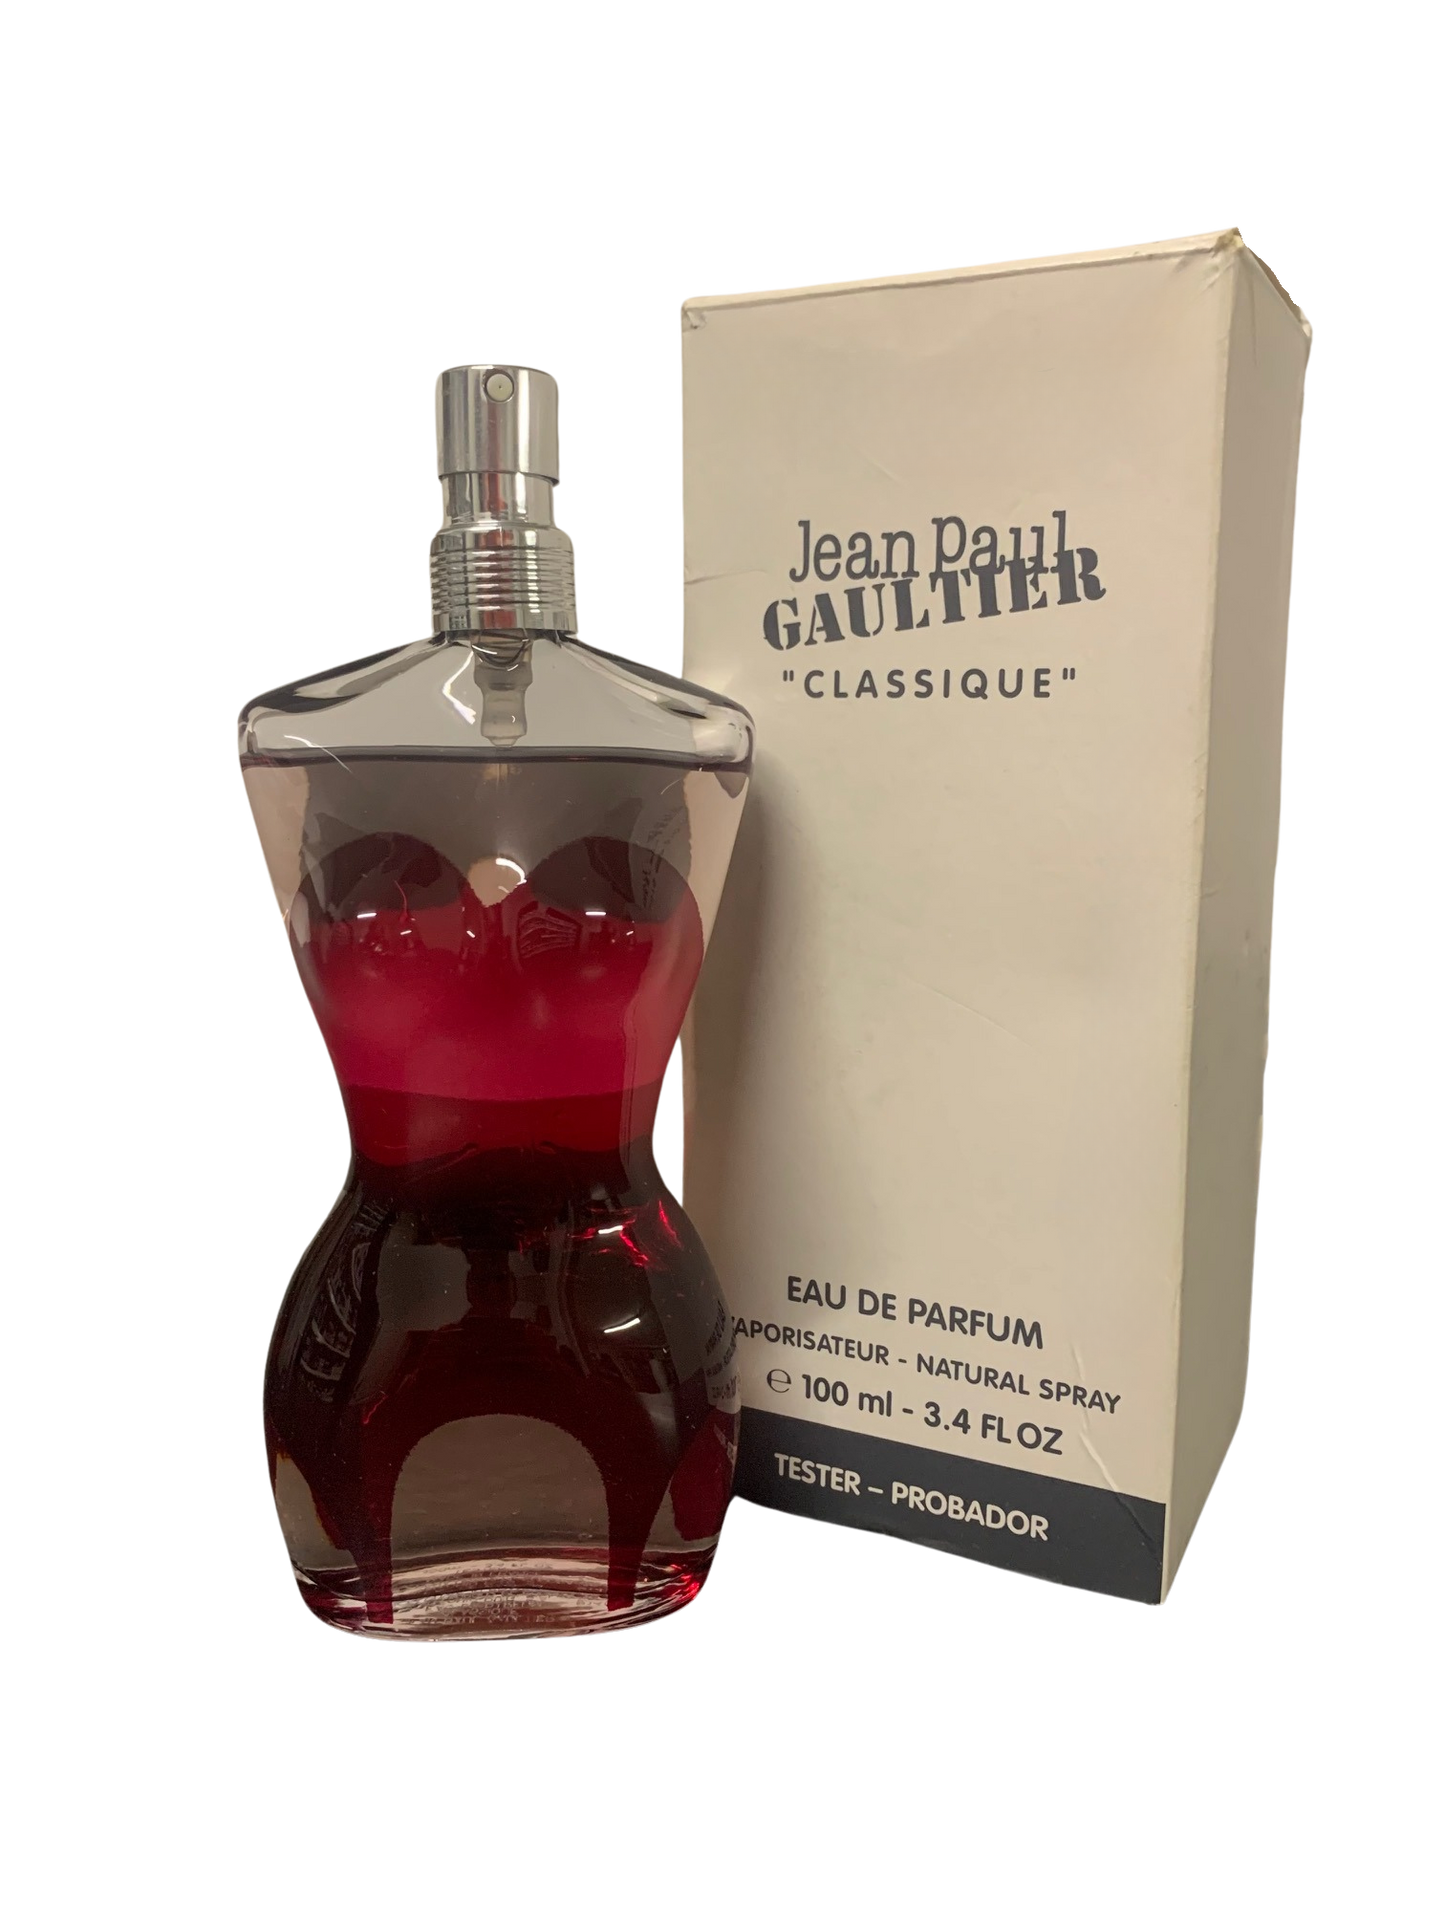 Jean Paul Gaultier " Le Classique " eau de parfum 100ml